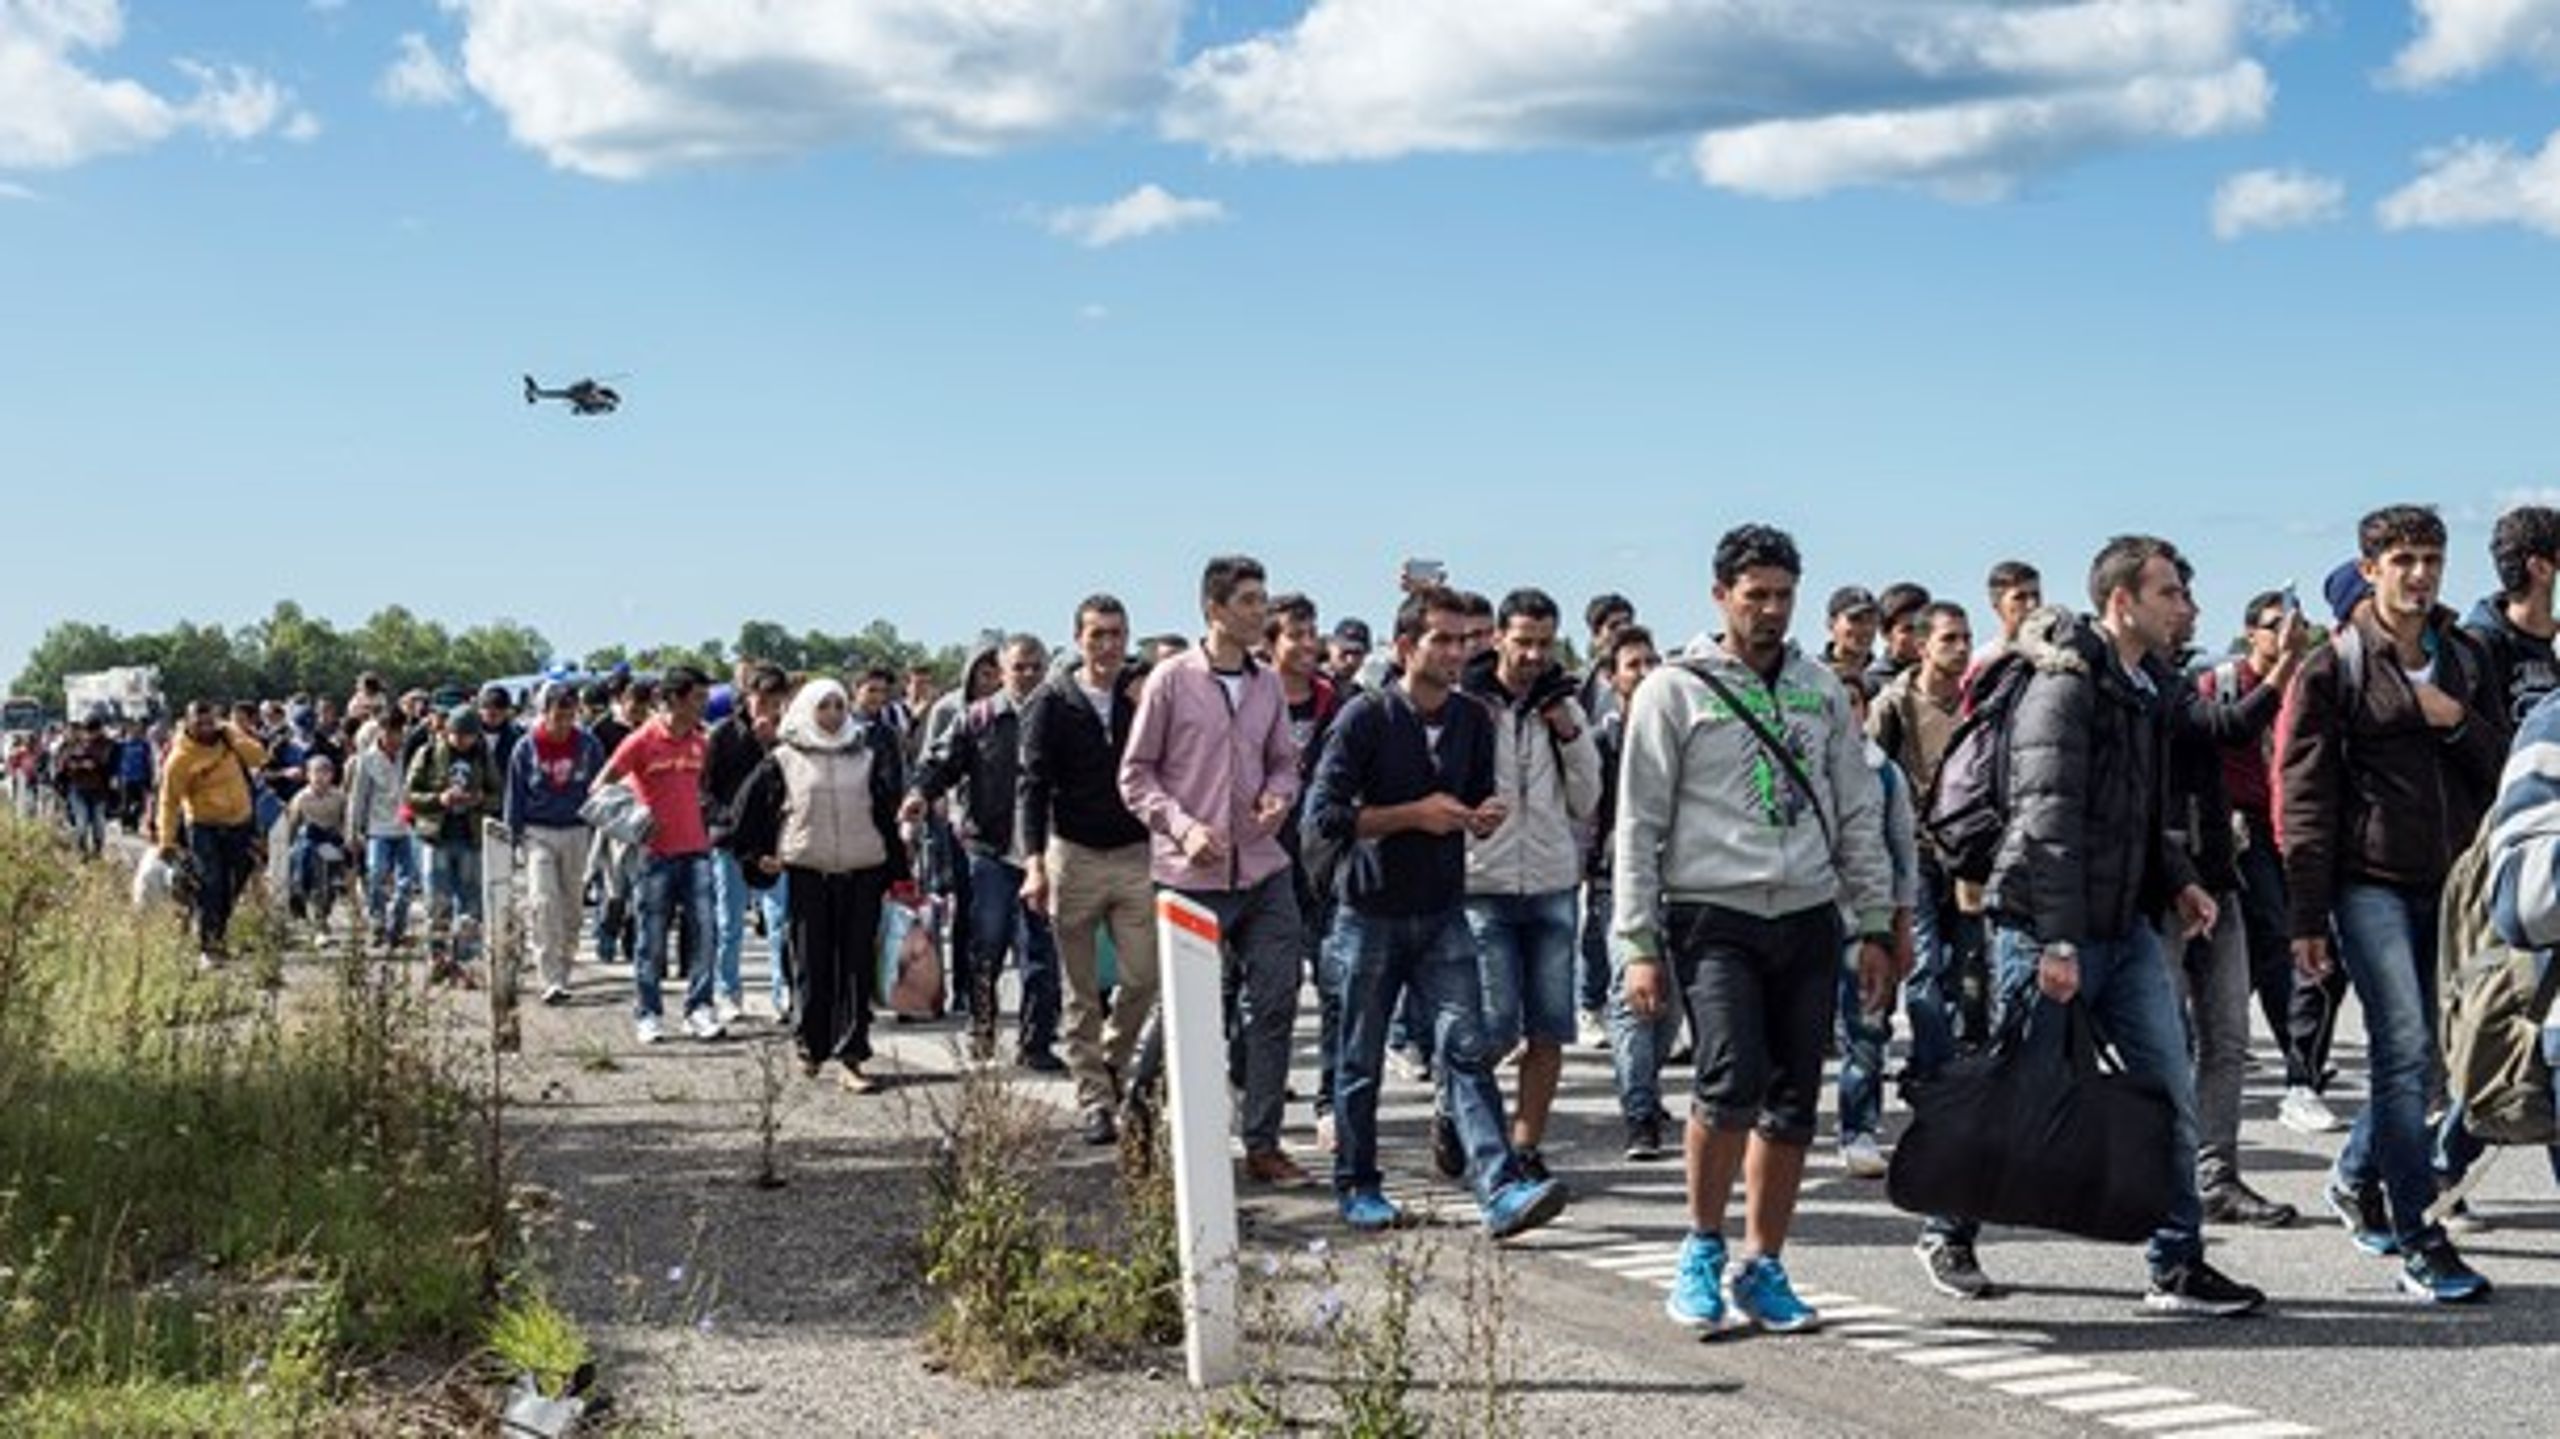 I 2016 har foreløbig ca. 5.500 søgt om asyl i Danmark. Derfor er der langt op til prognosen, der er på 10.000 for hele året.